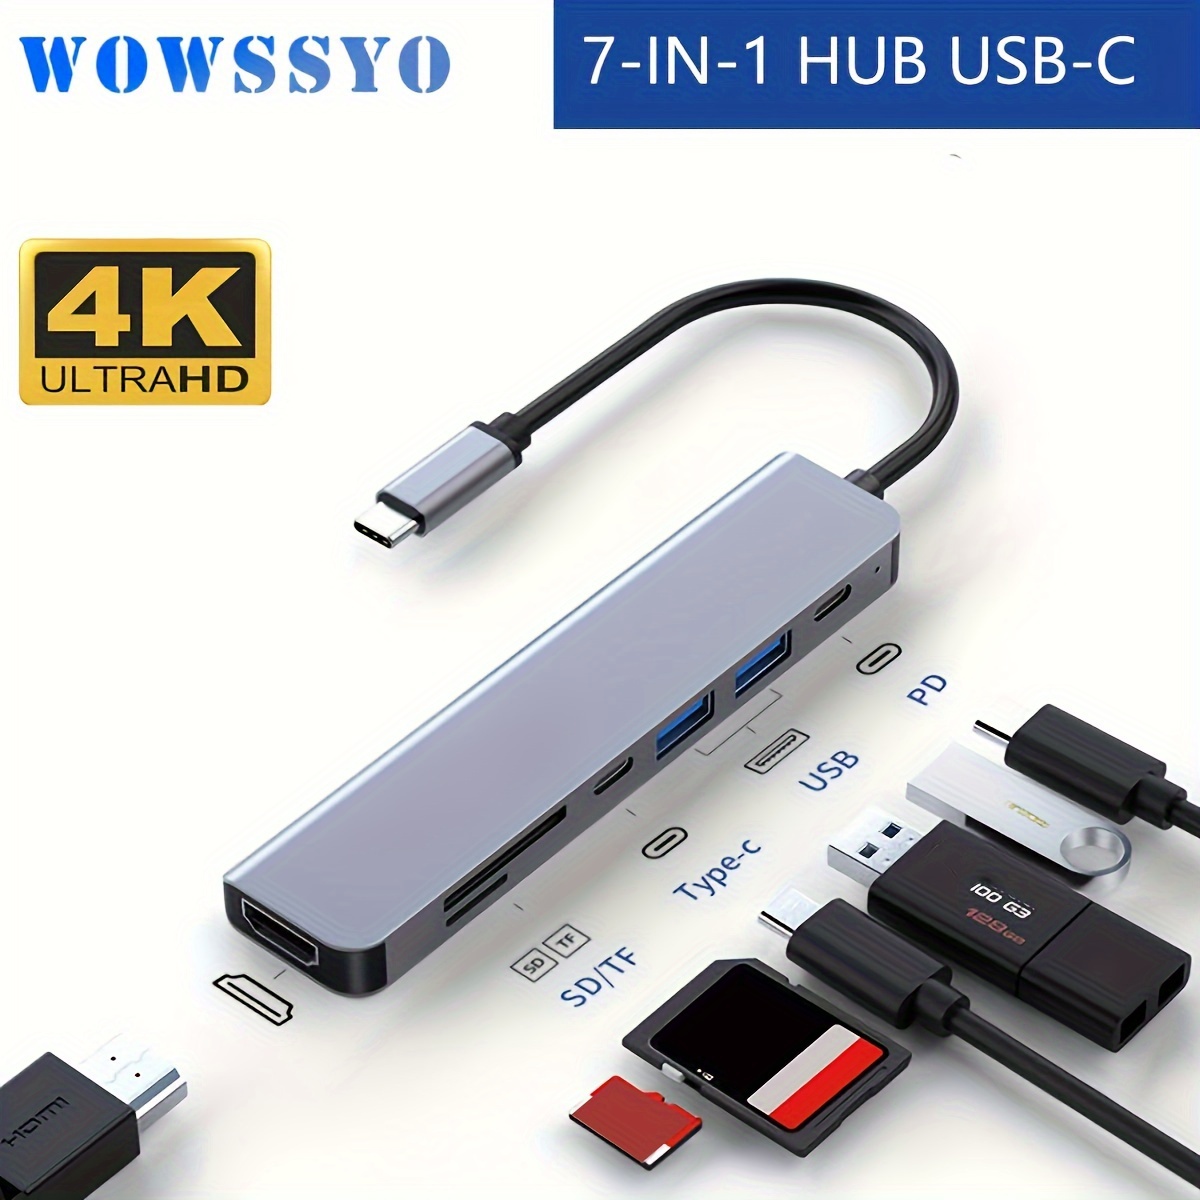 MOKiN Adaptadores USB C para MacBook Pro/Air, Mac Dongle con 3 puertos USB,  USB C a HDMI, USB C a RJ45 Ethernet, adaptador USB C a HDMI 9 en 1, carga